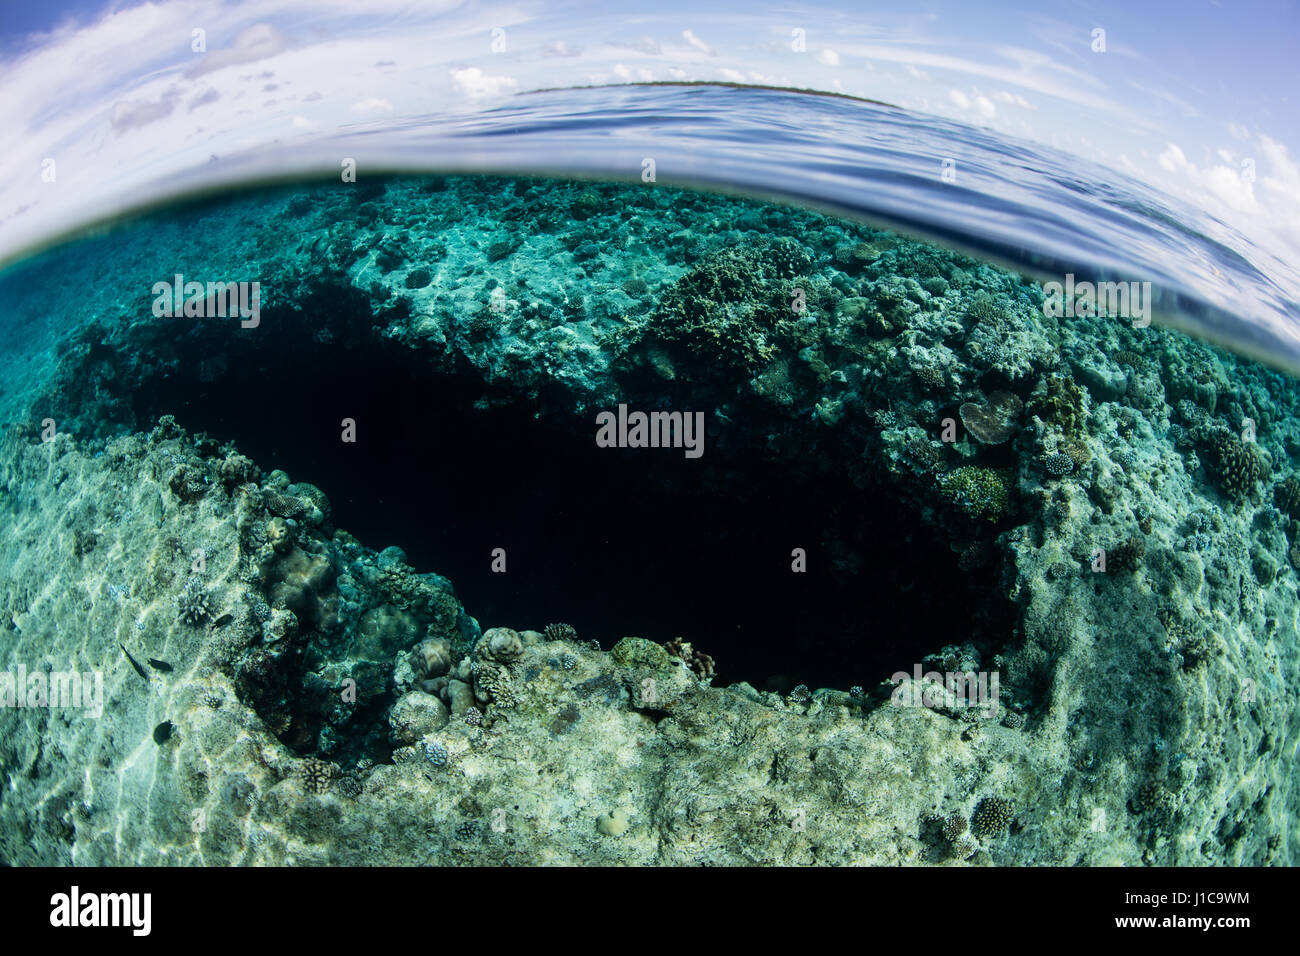 Ein blaues Loch fällt in das Barrier Reef in der Republik Palau. Dieses tropische Land ist ein beliebtes Ziel für Taucher und Schnorchler. Stockfoto